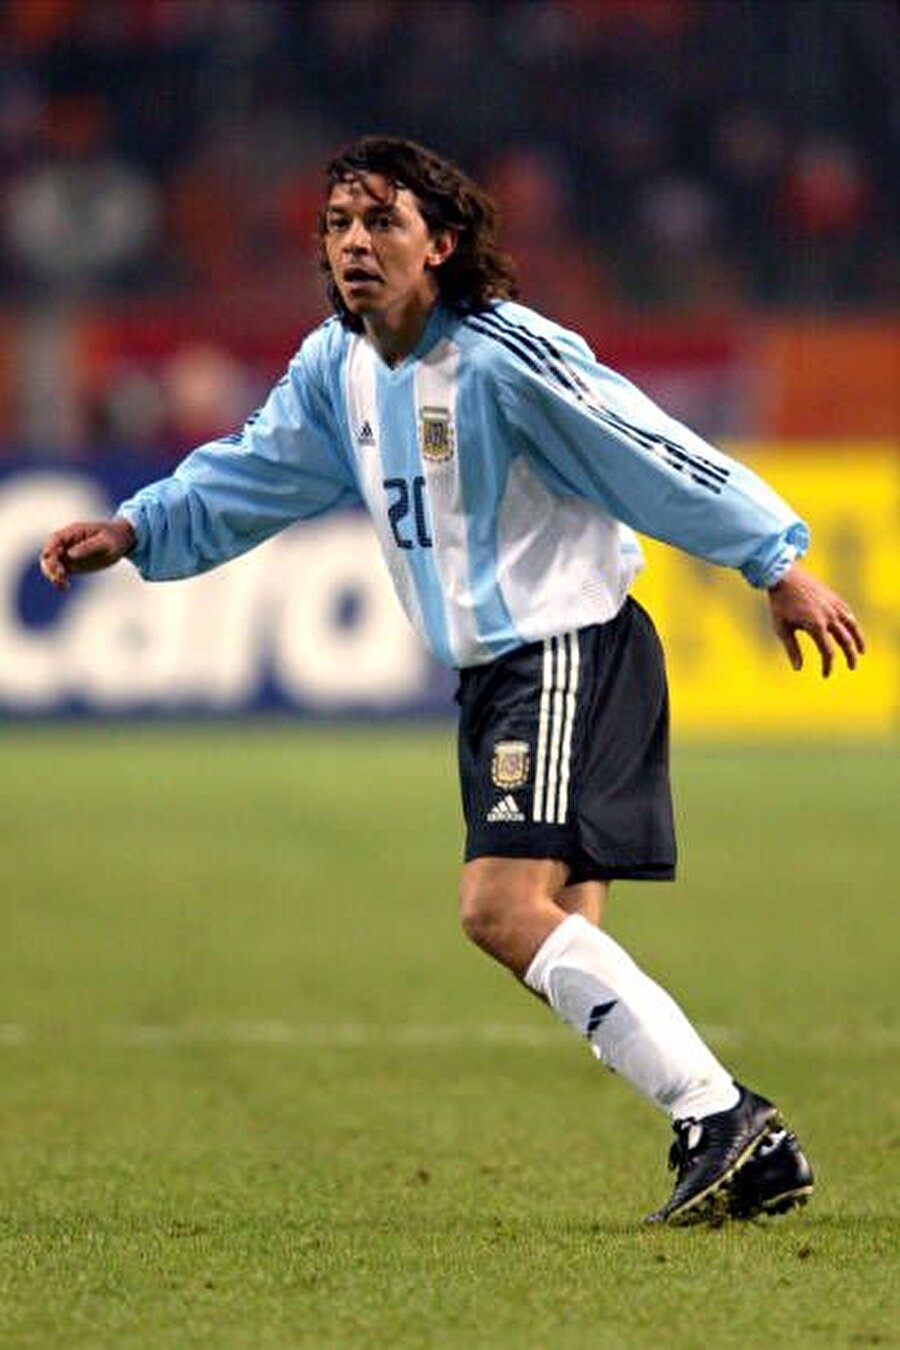 Oyun stili Arjantin futbolunun efsane 10 numarası Gallardo'ya benzetildiği için Galla lakabını aldı.

                                    
                                    
                                    
                                    
                                    
                                
                                
                                
                                
                                